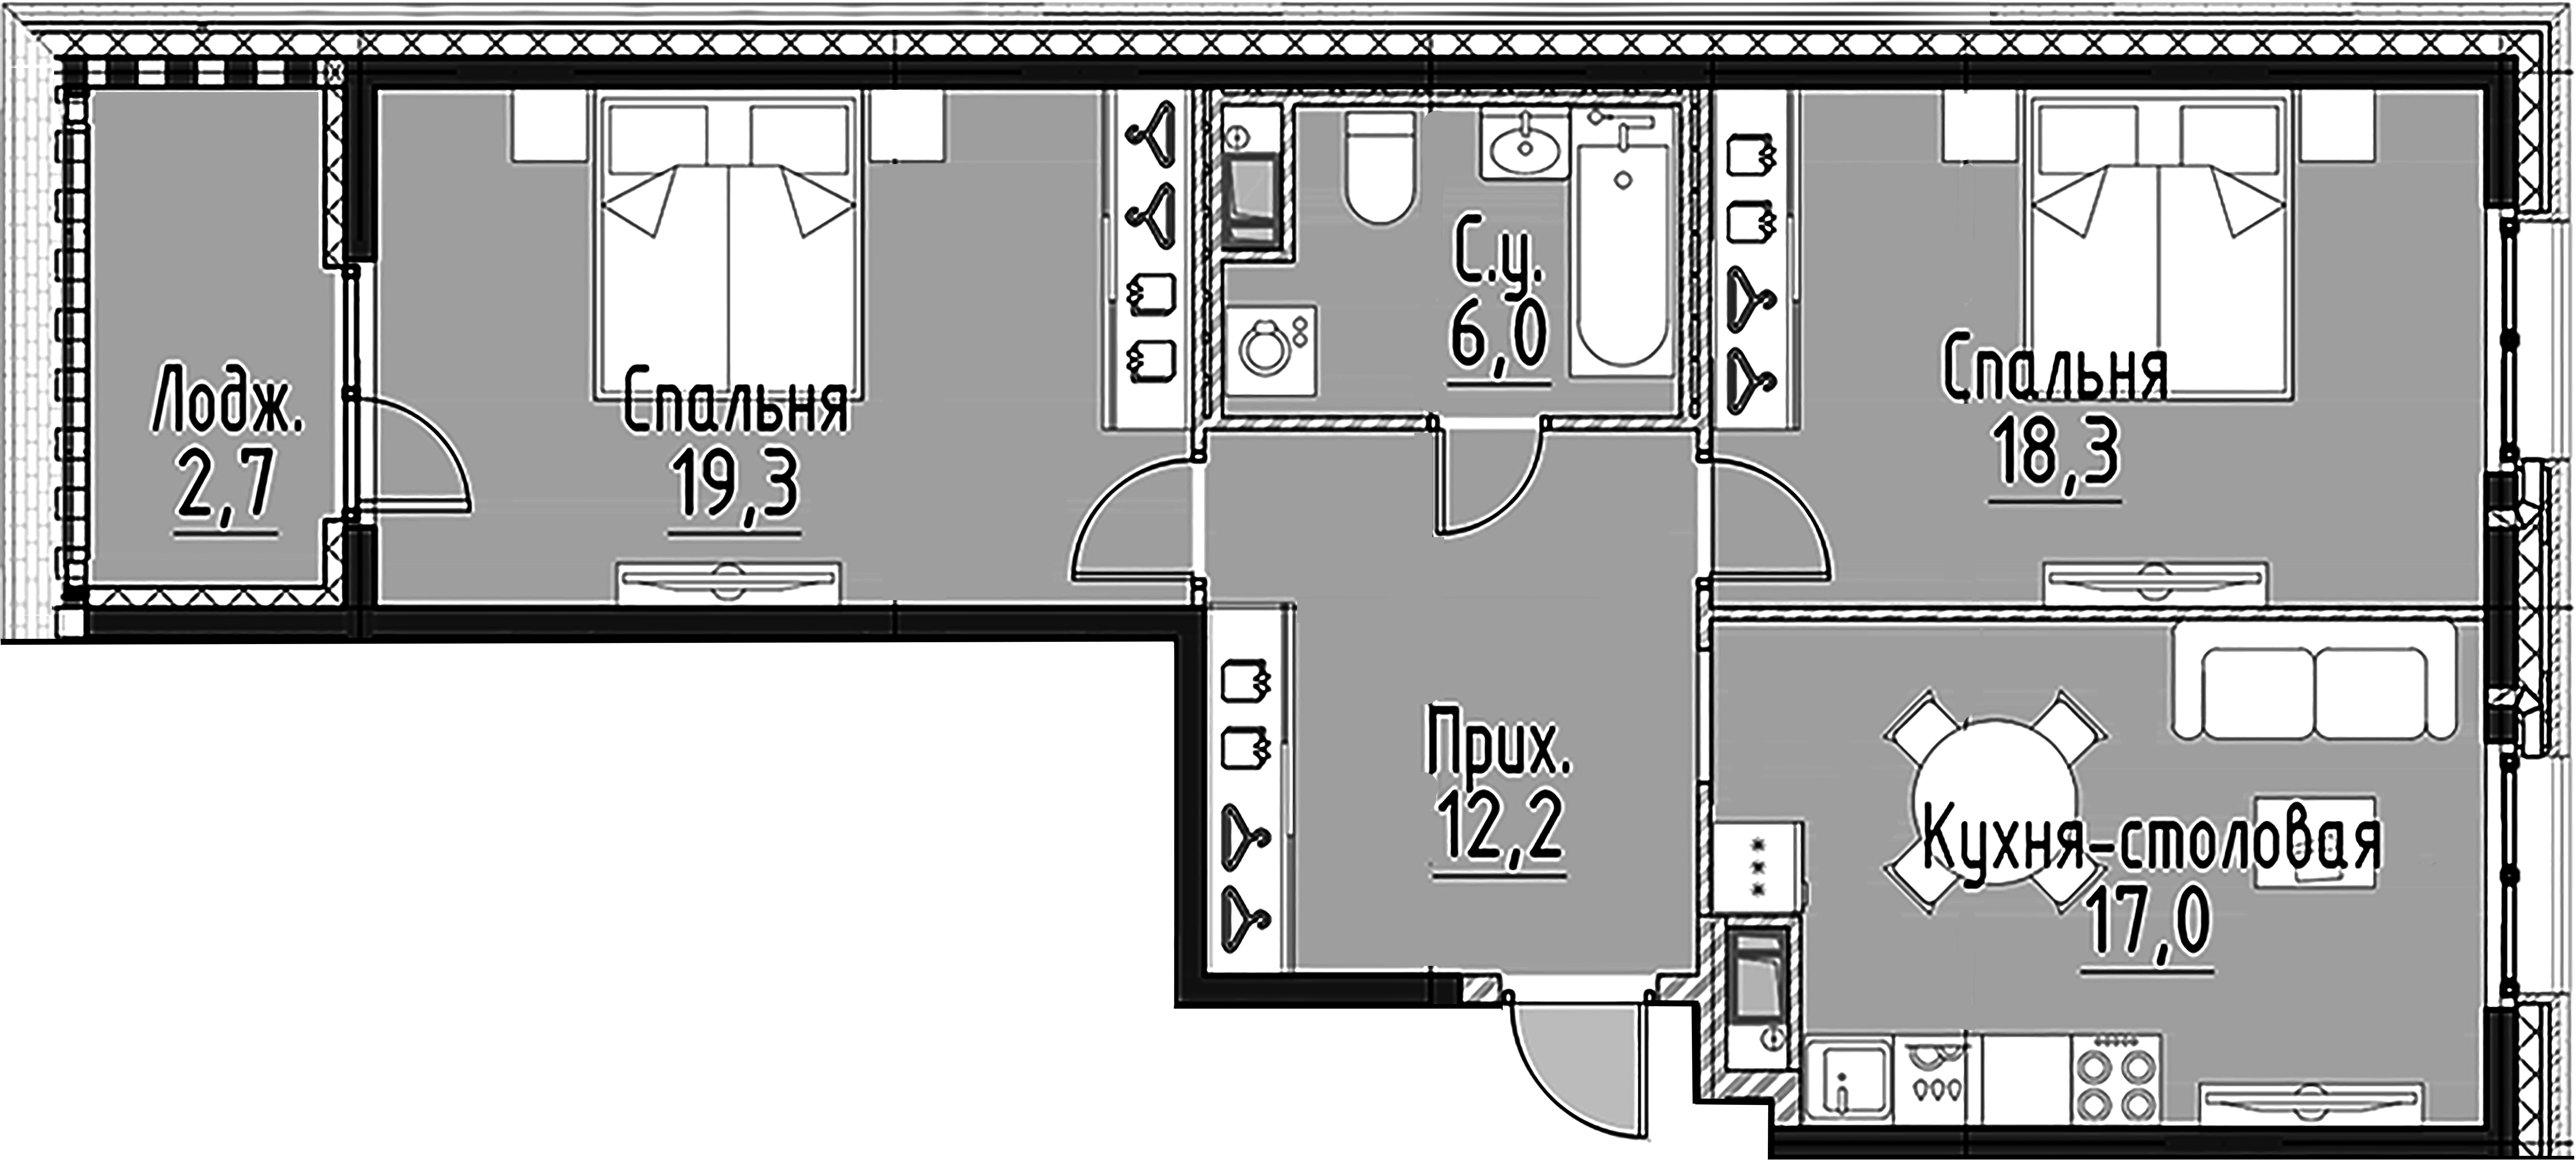 2-комнатная квартира, 72.6 м²; этаж: 8 - купить в Санкт-Петербурге